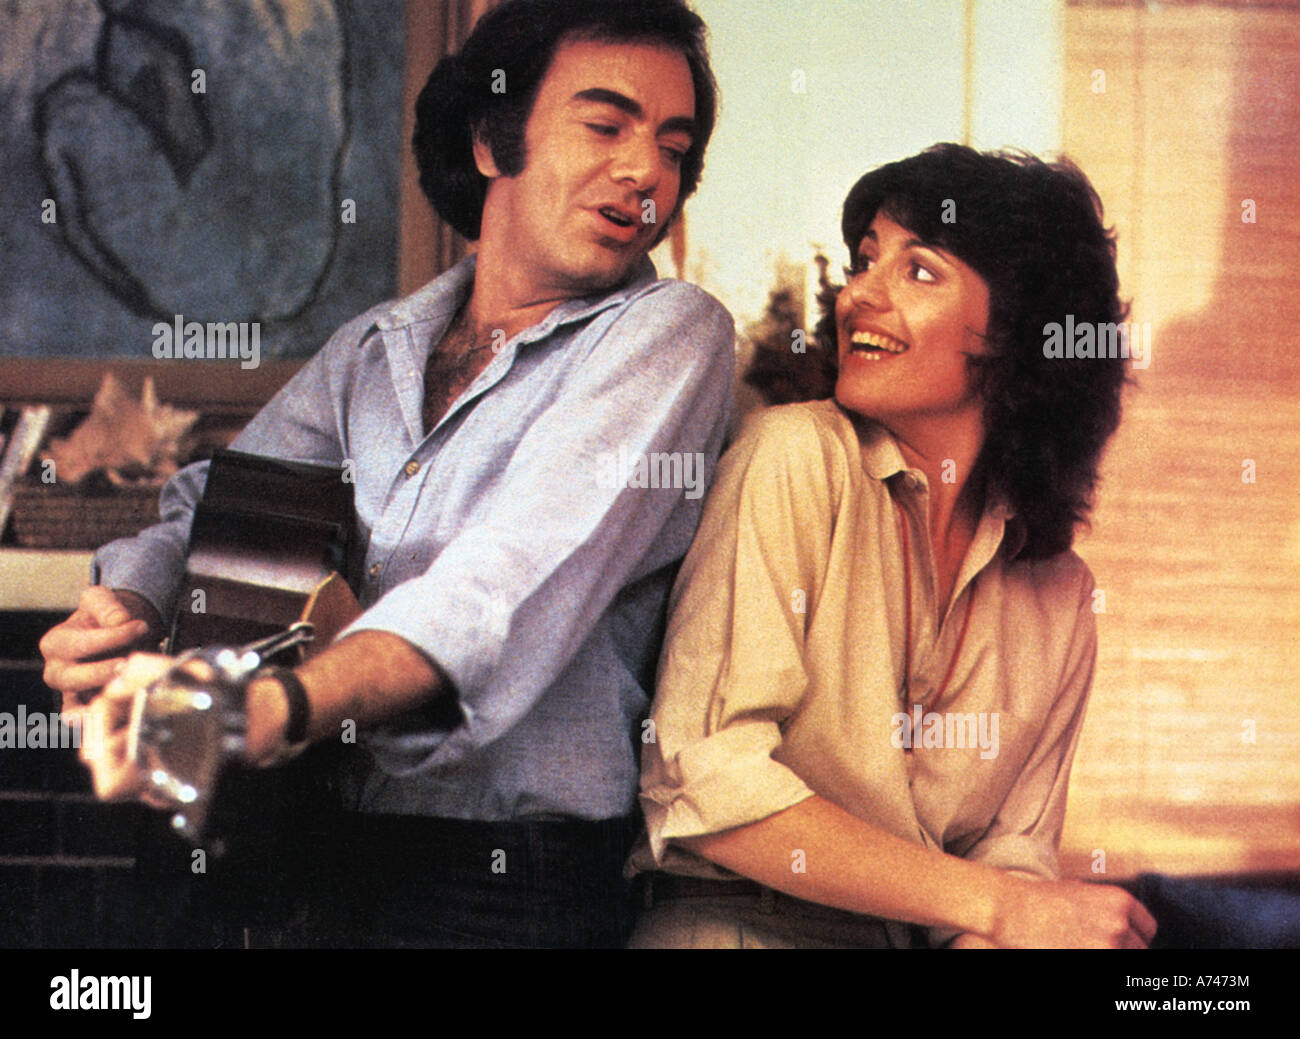 La chanteuse de jazz EMI 1980 film avec Neil Diamond et Lucie Arnaz Banque D'Images